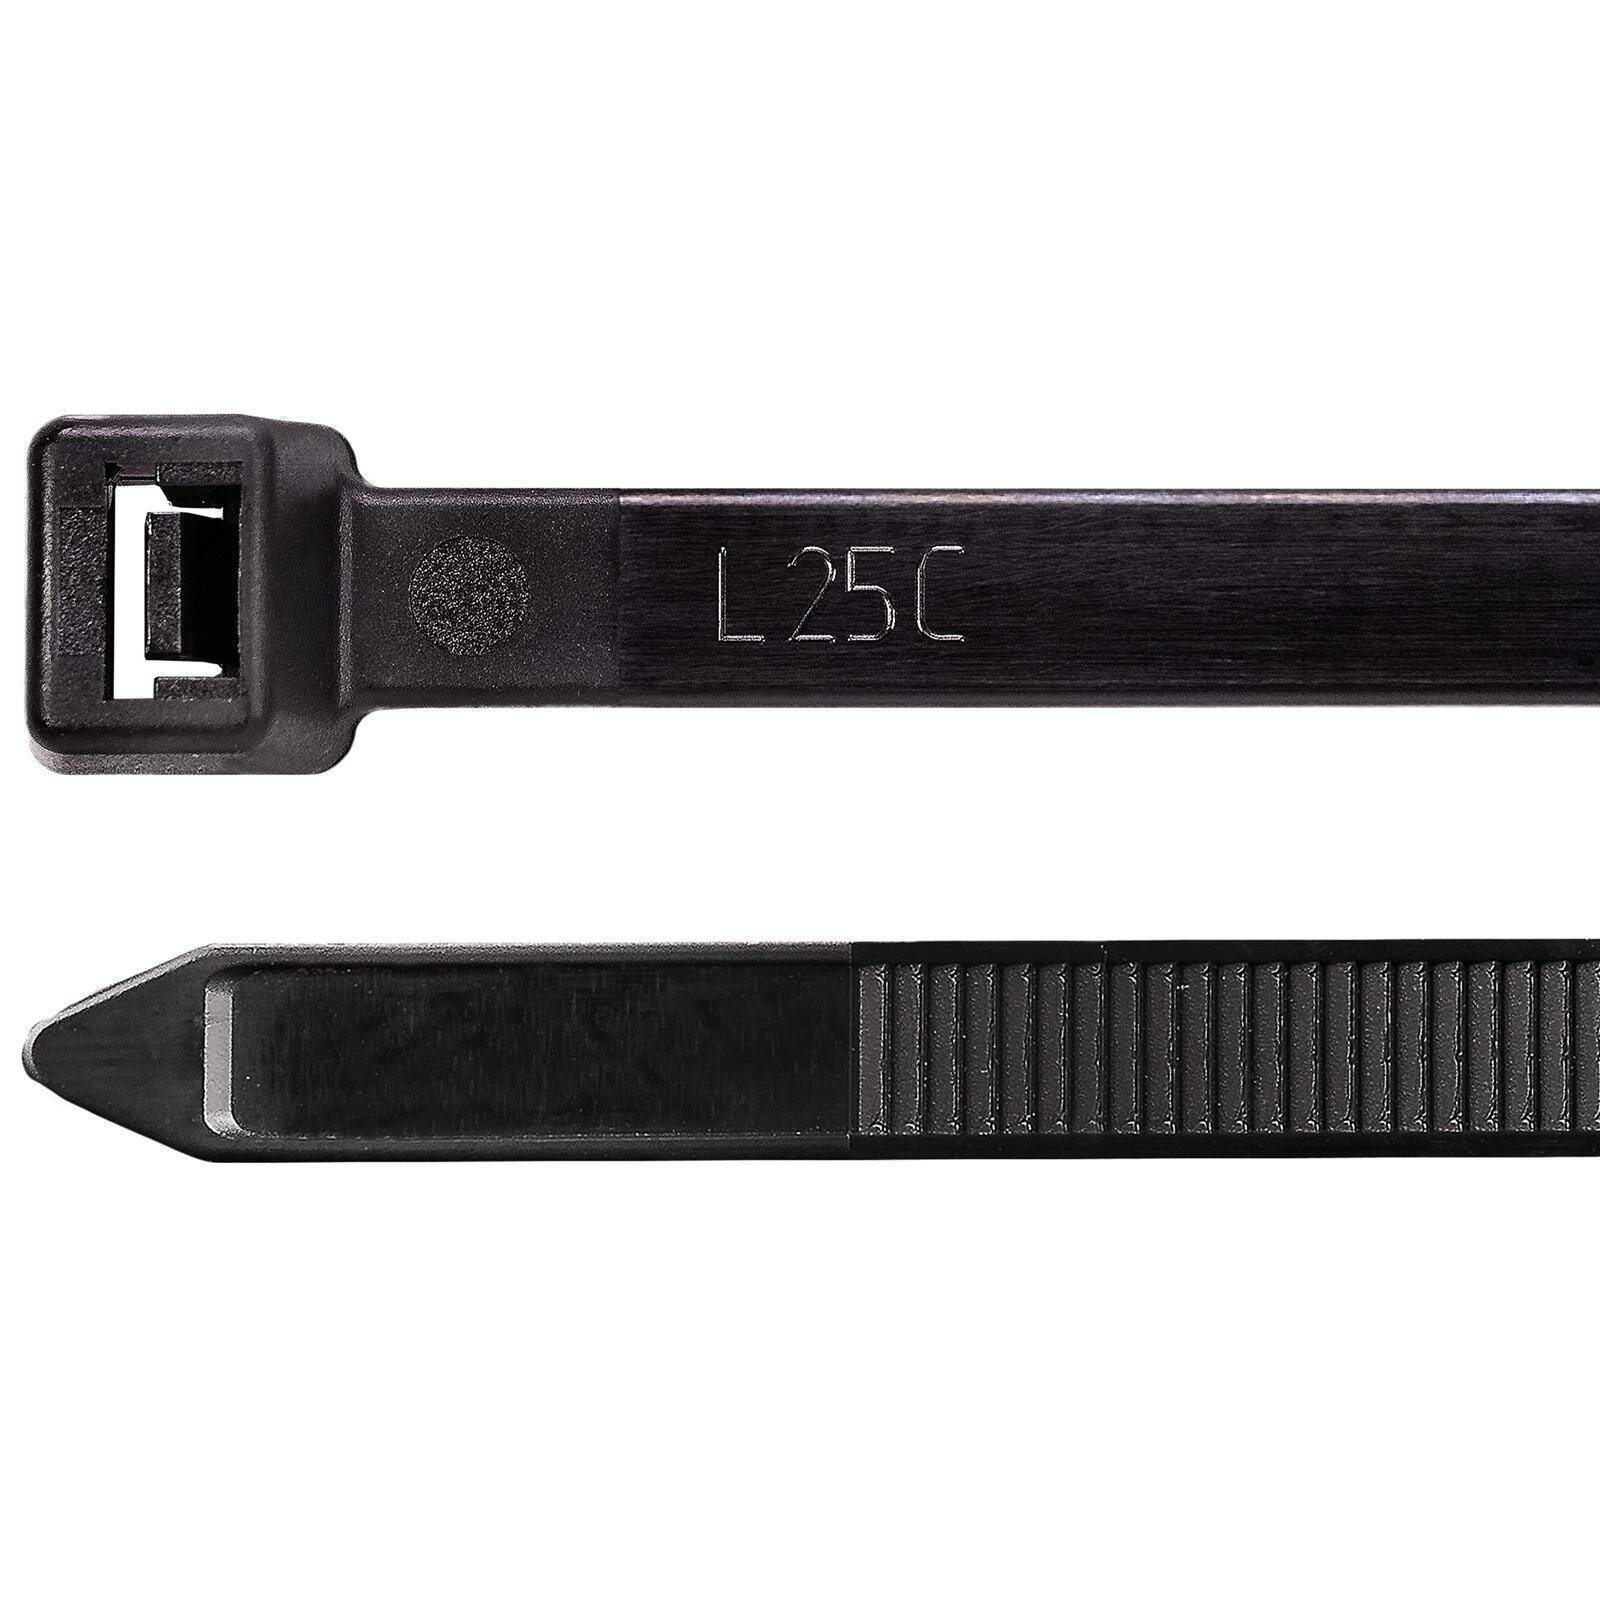 200 mm x 8 mm Premium Nylon-Kabelbinder 100er Packung mit schwarzen wiederverwendbar Kabelbindern widerstandsfähige UV- und hitzebeständige Kabelbinder von Calaisco